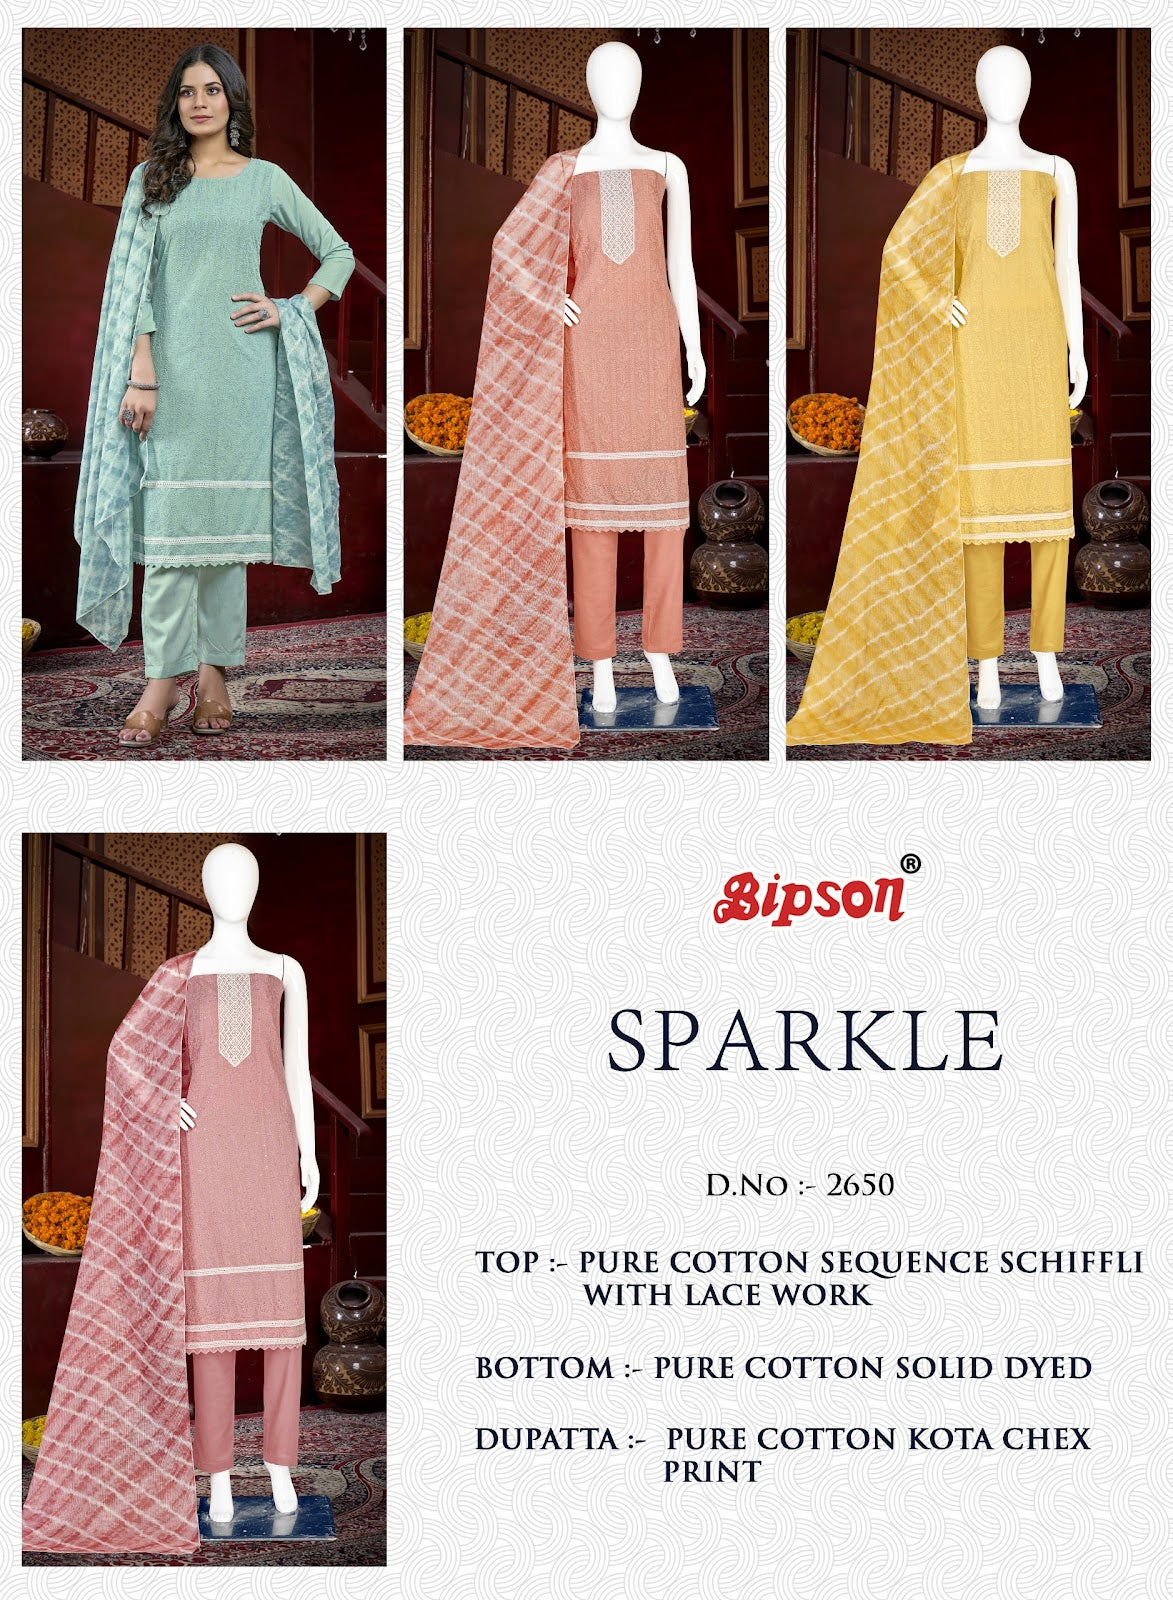 Sparkle 2650 Bipson Prints Pure Cotton Pant Style Suits Supplier